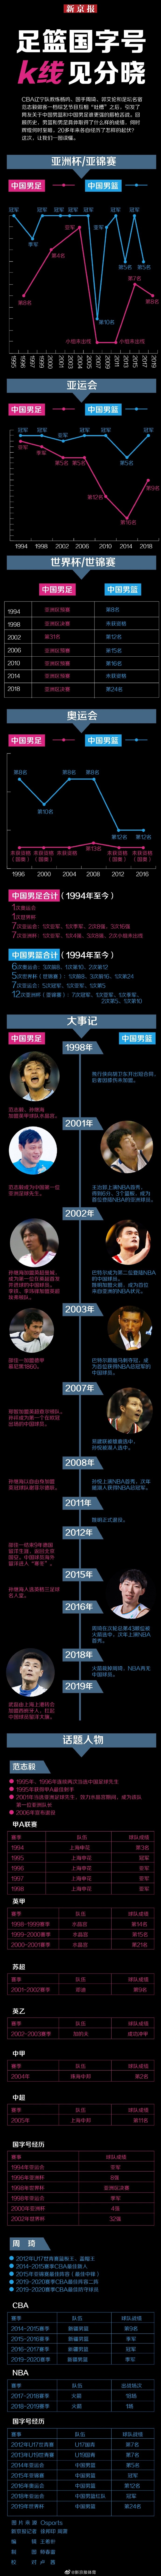 中国男篮PK中国男篮:一张图了解两队民族品牌的沉浮